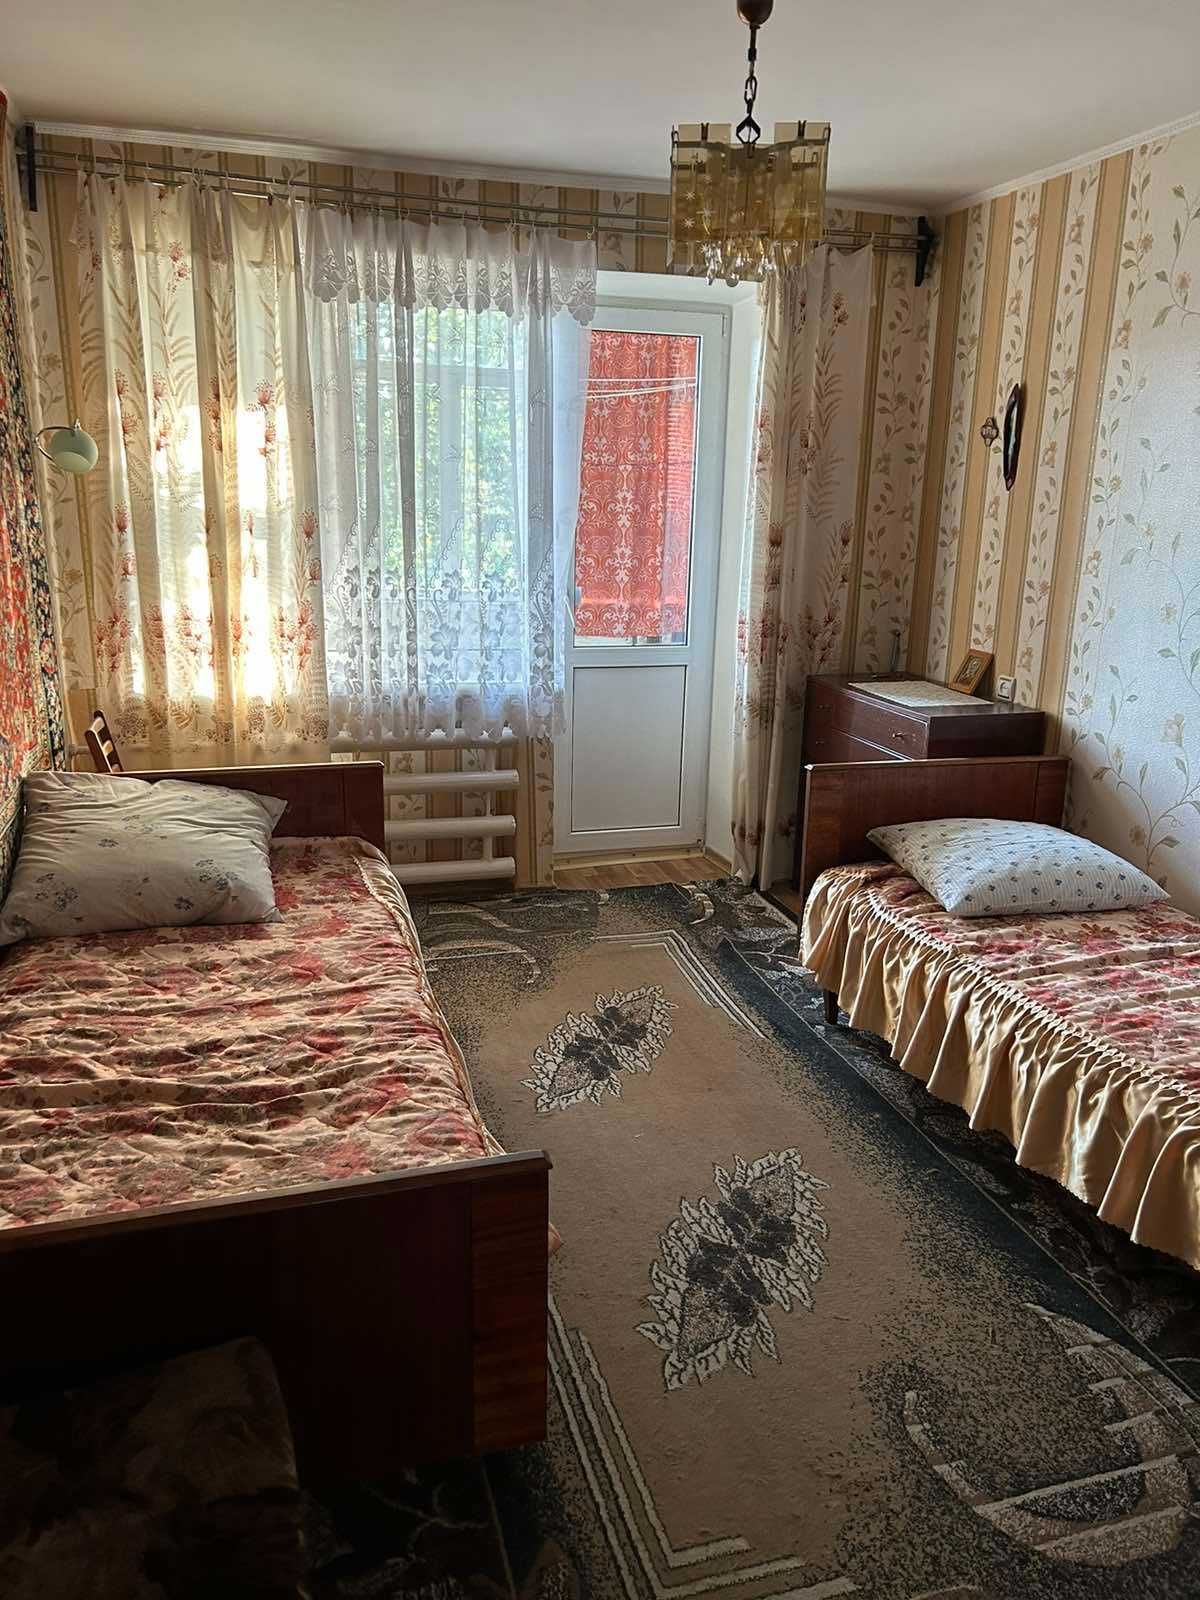 Продается 2-х комнтная квартира по ул. Горняков